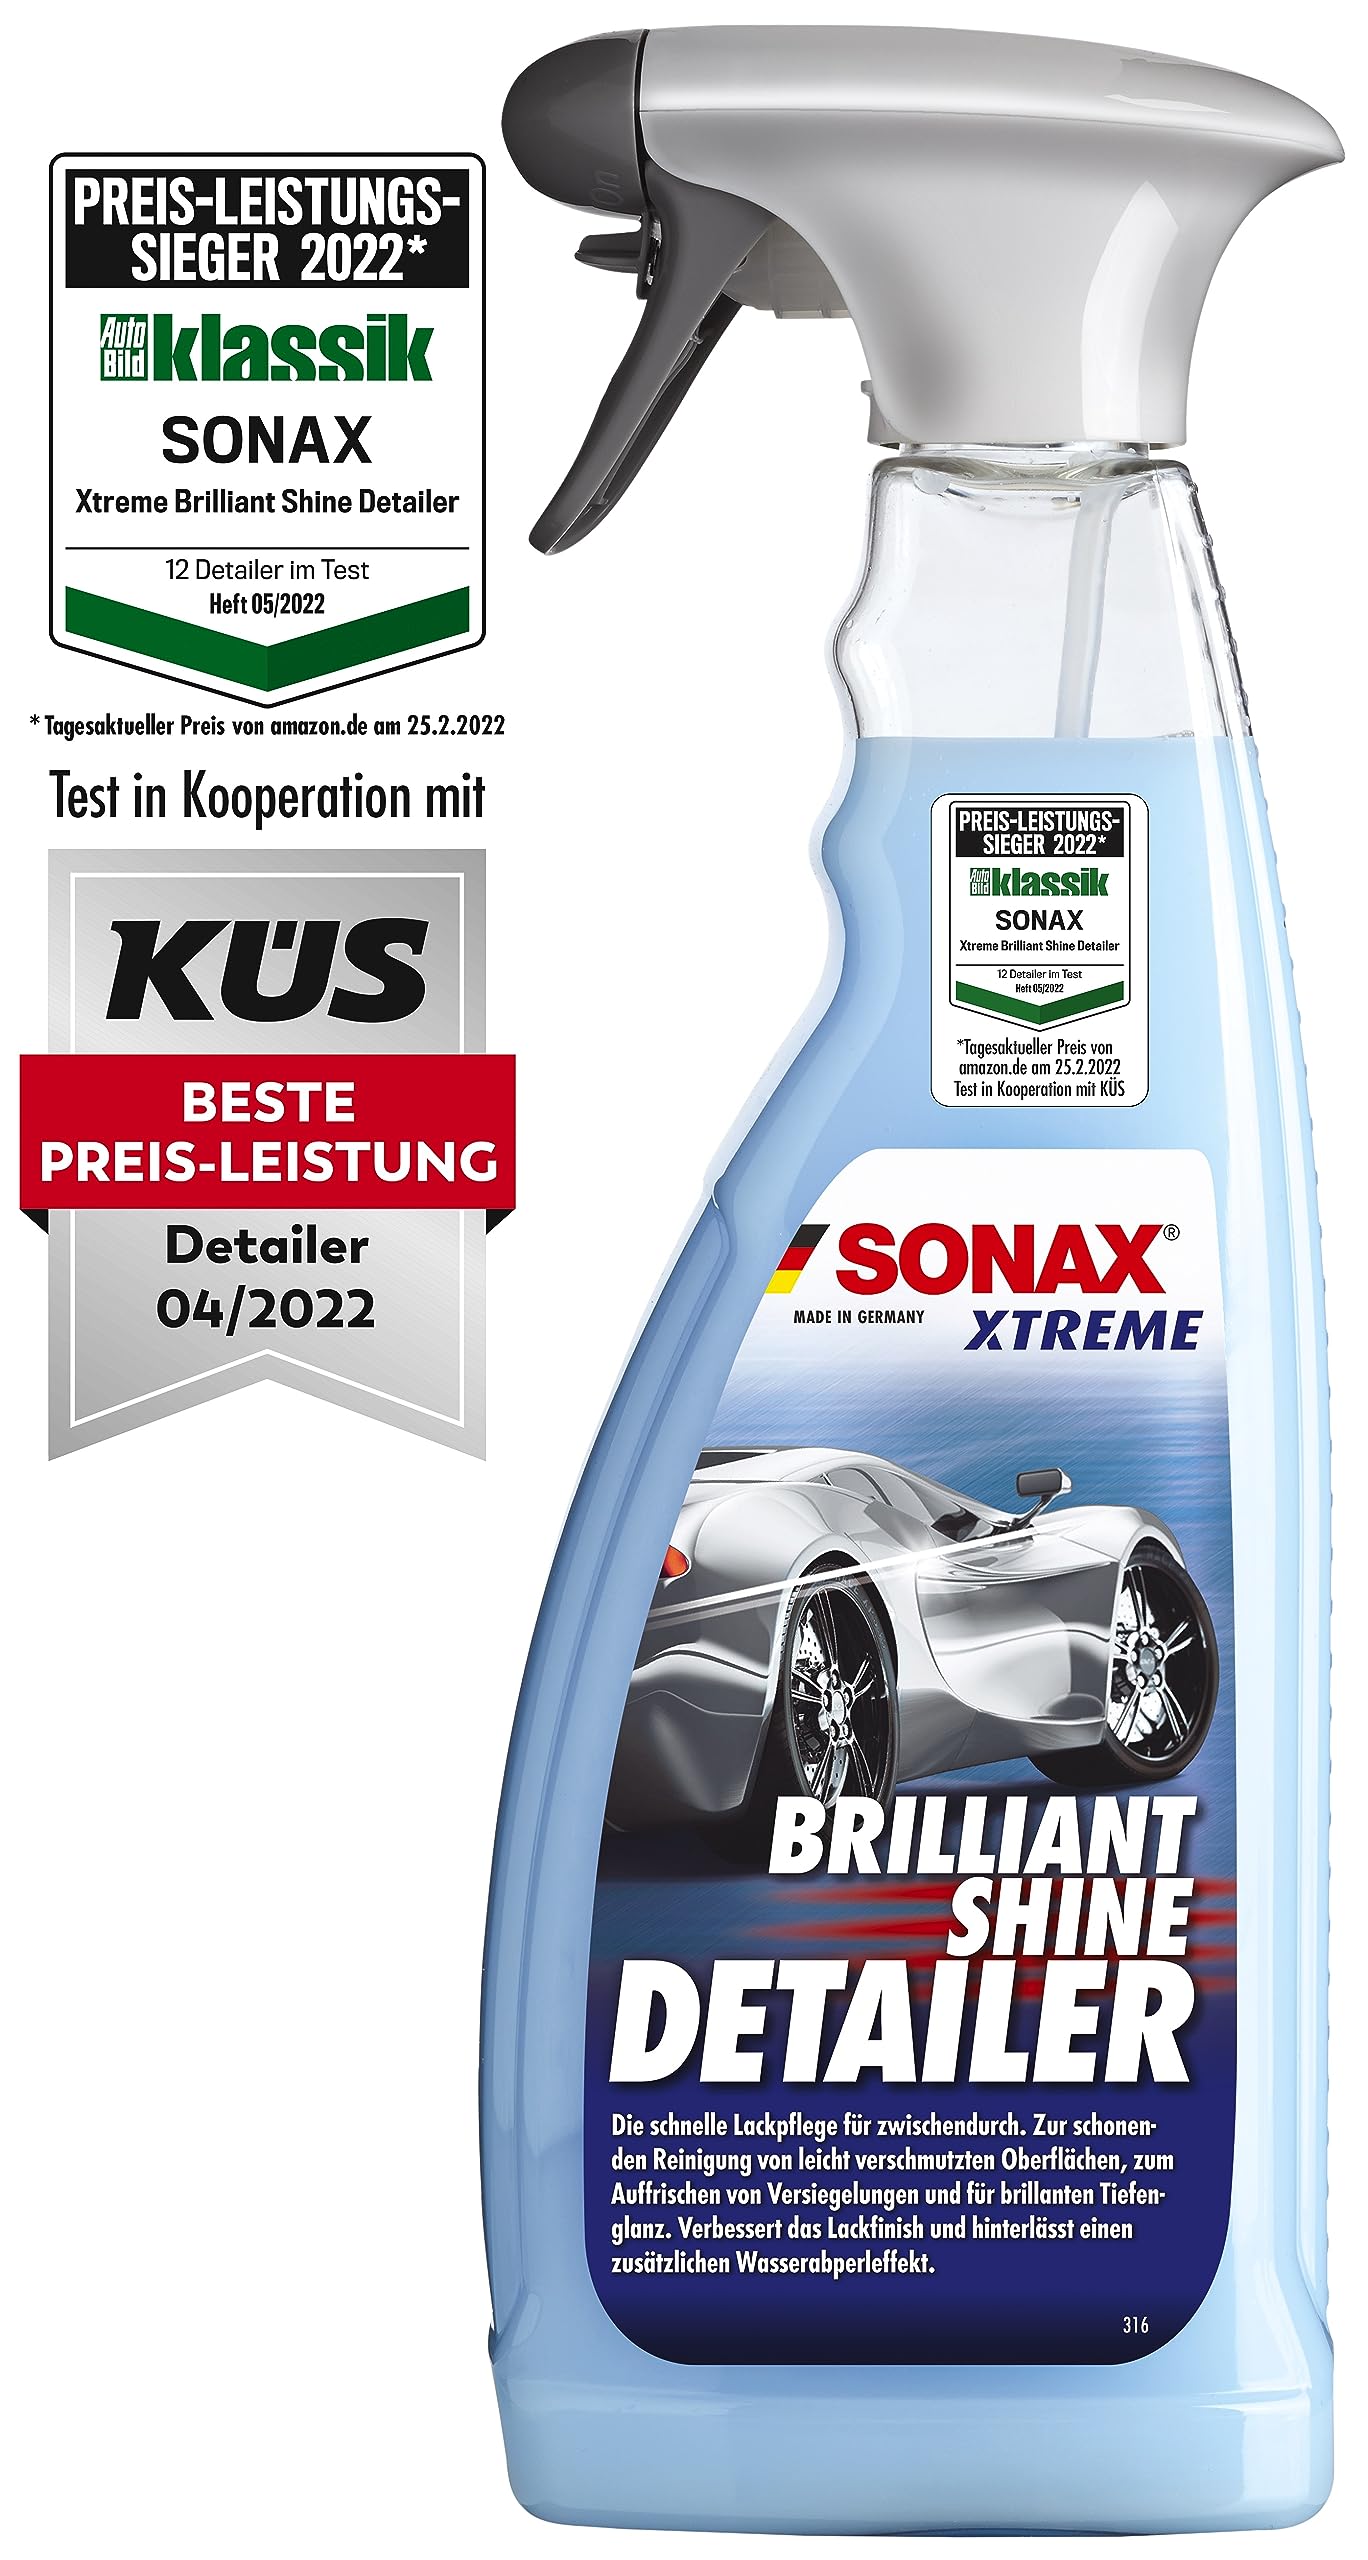 SONAX XTREME BrilliantShine Detailer (750 ml) schnelle, schonende und gründliche Lackpflege für zwischendurch | Art-Nr. 02874000 von SONAX